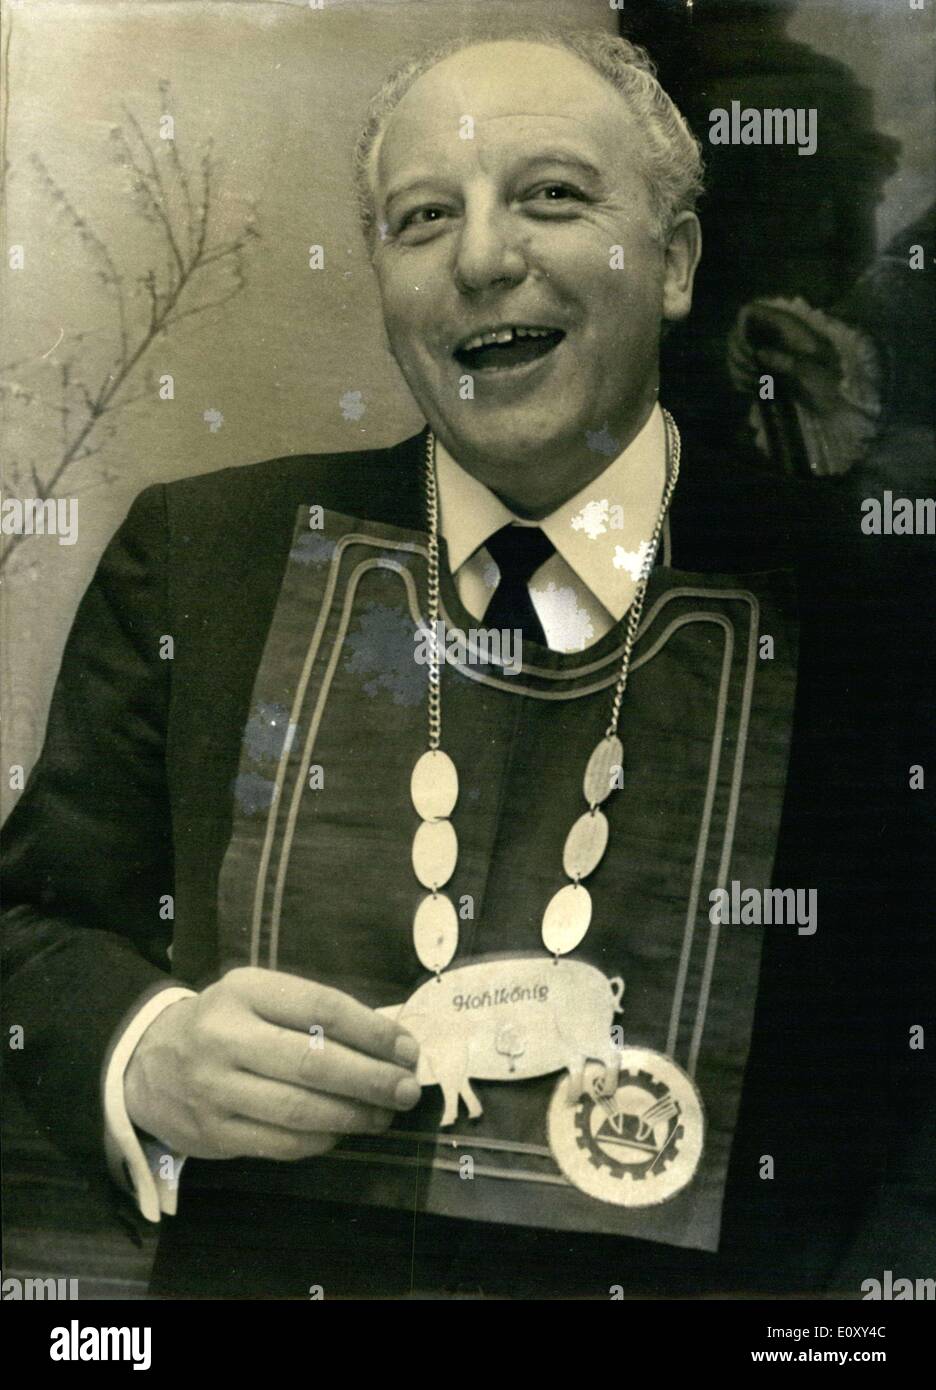 Le 23 janvier 1968 - l'on voit ici est membre du FdP et de l'opposition le chef Walter Scheel, qui a été désigné le ''kohlkonig'' ou ''king'' chou lors d'une réunion d'un club des hommes politiques économiques à Bonn. Il est plutôt fier de son nouveau titre et est photographié ici avec un dossard et son ''ordre du roi. Banque D'Images